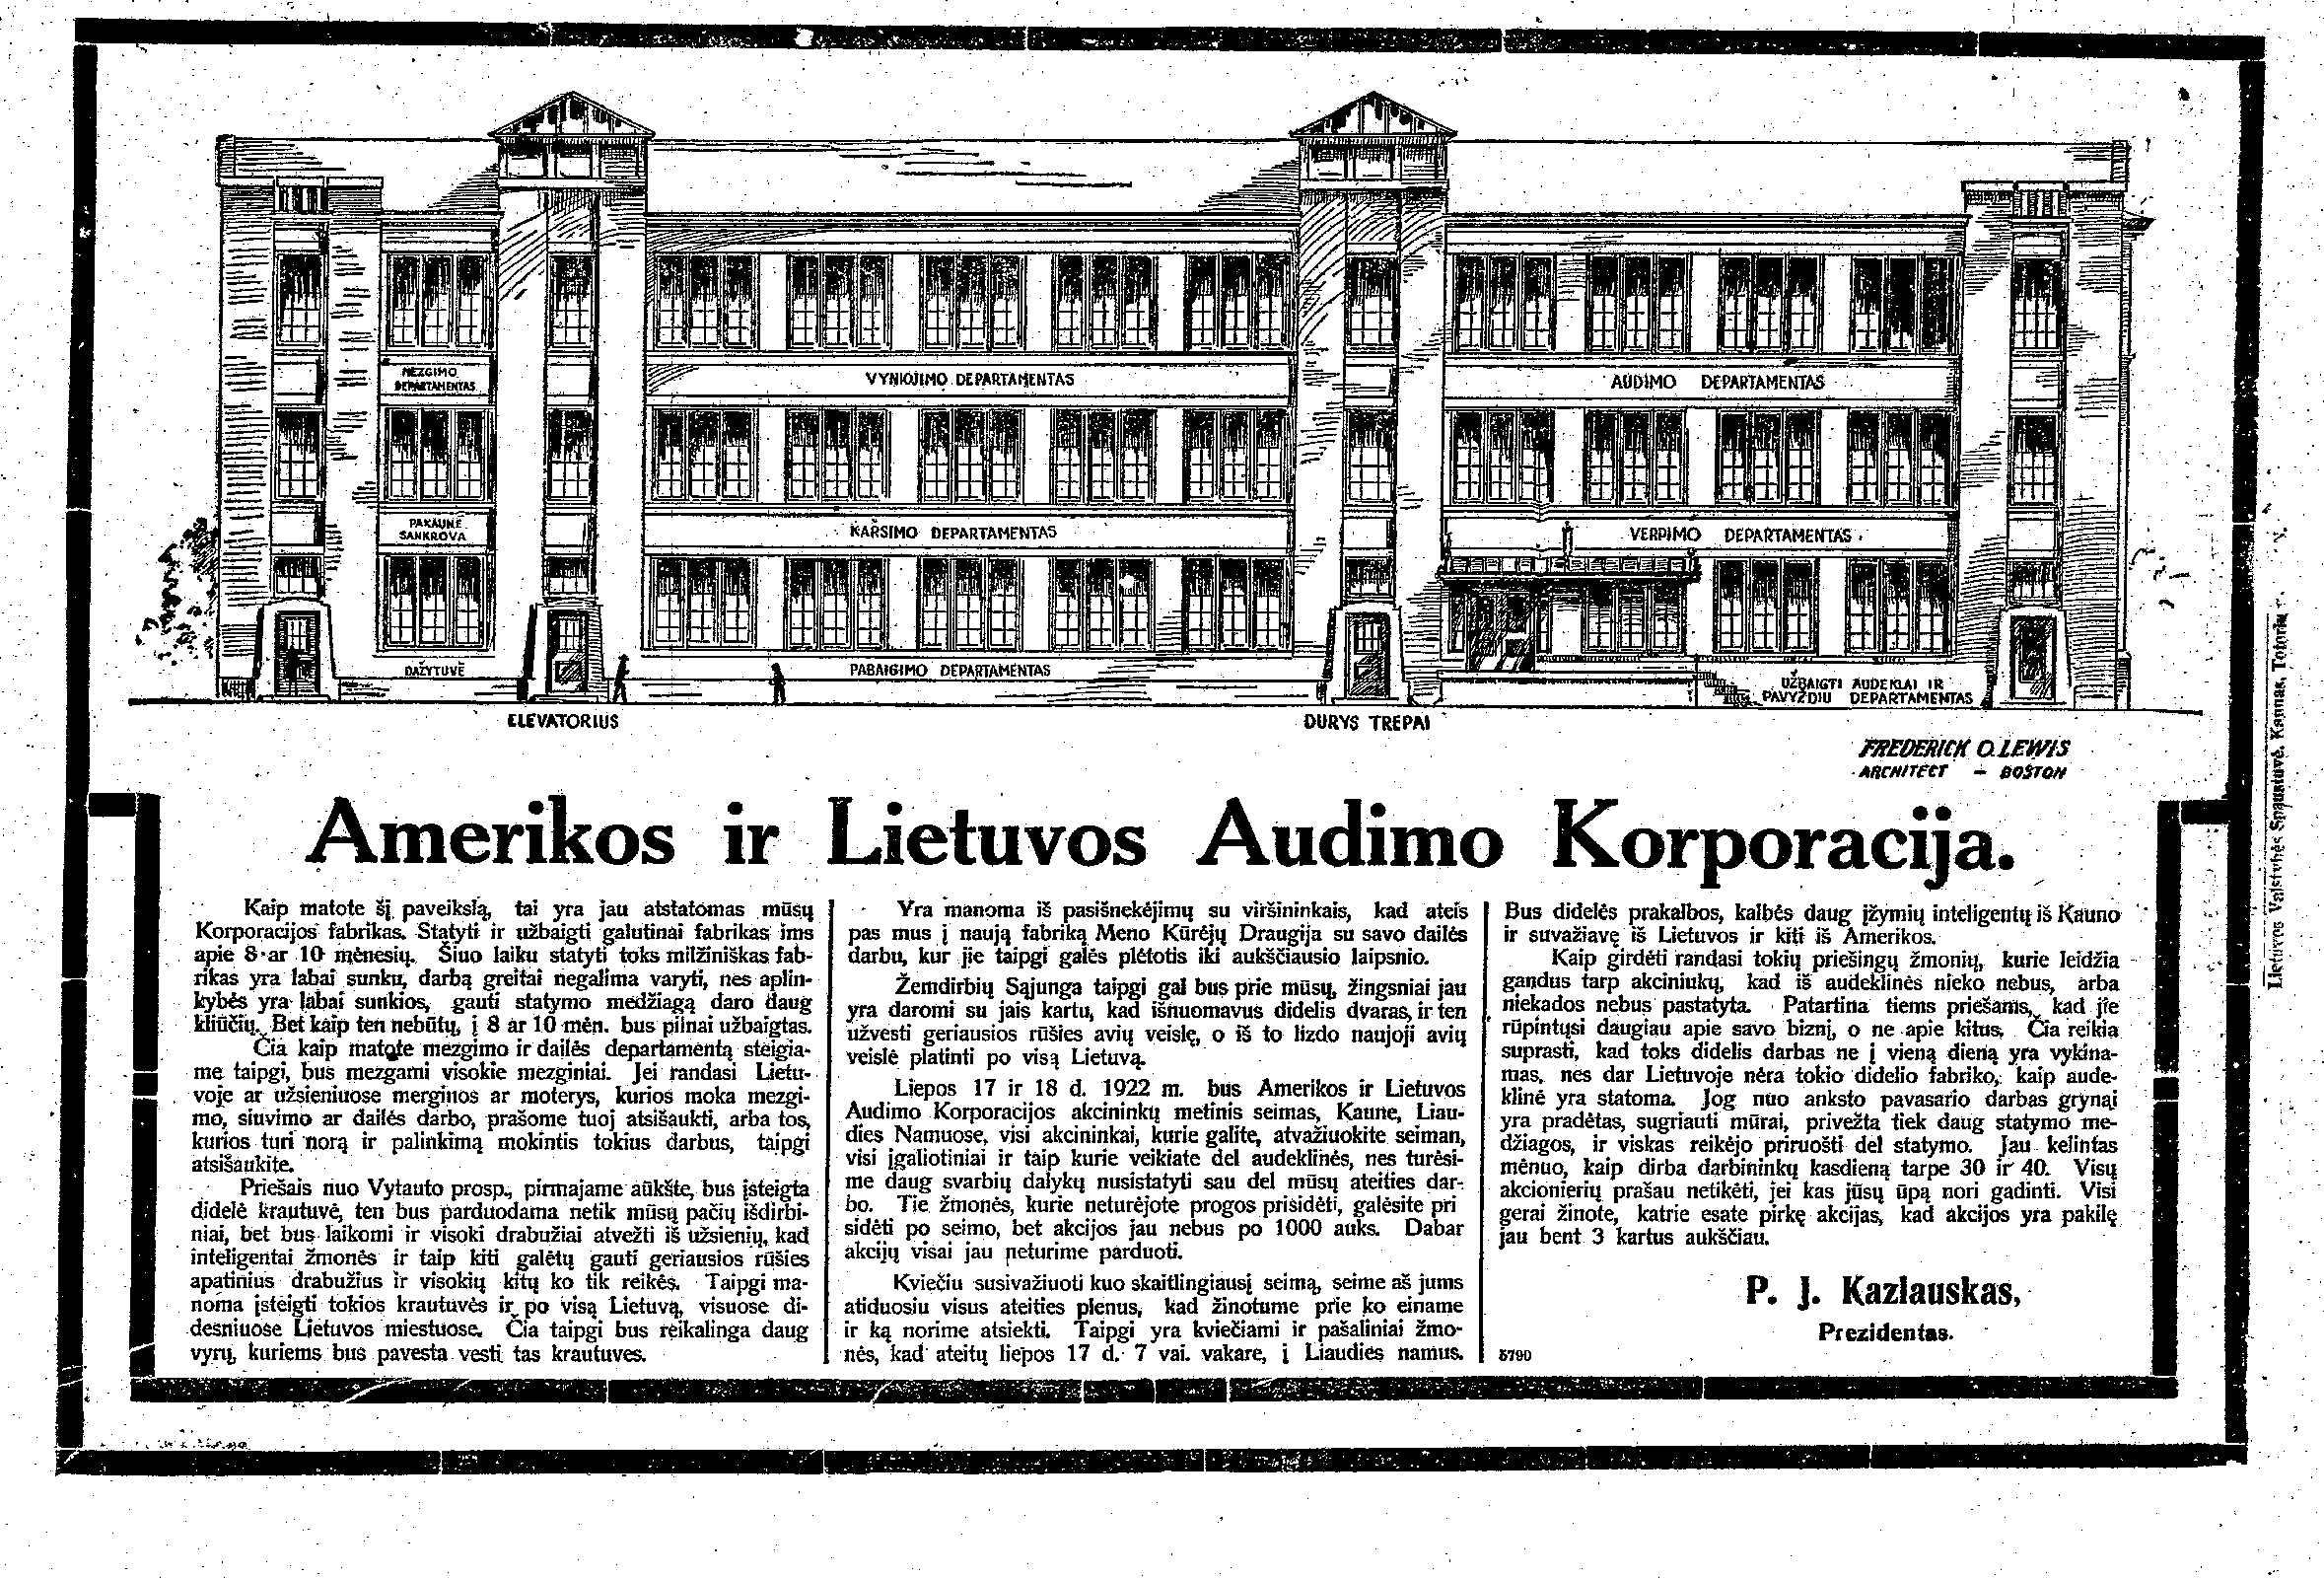 Amerikos ir Lietuvos Audimo korporacija